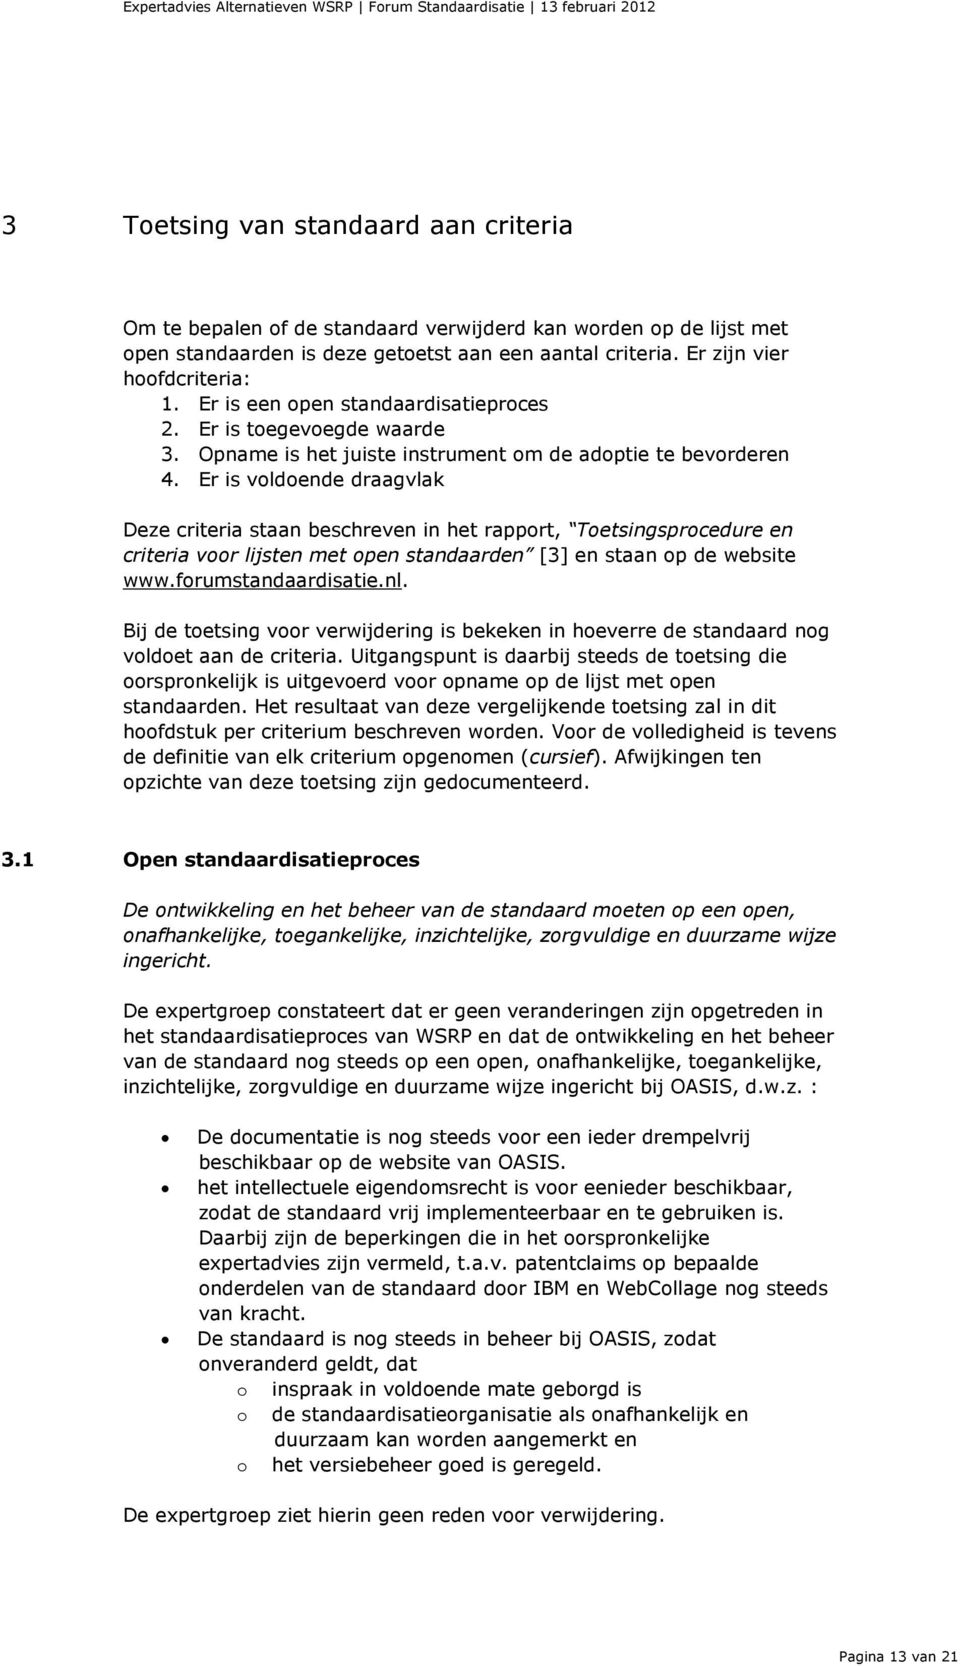 Er is voldoende draagvlak Deze criteria staan beschreven in het rapport, Toetsingsprocedure en criteria voor lijsten met open standaarden [3] en staan op de website www.forumstandaardisatie.nl.